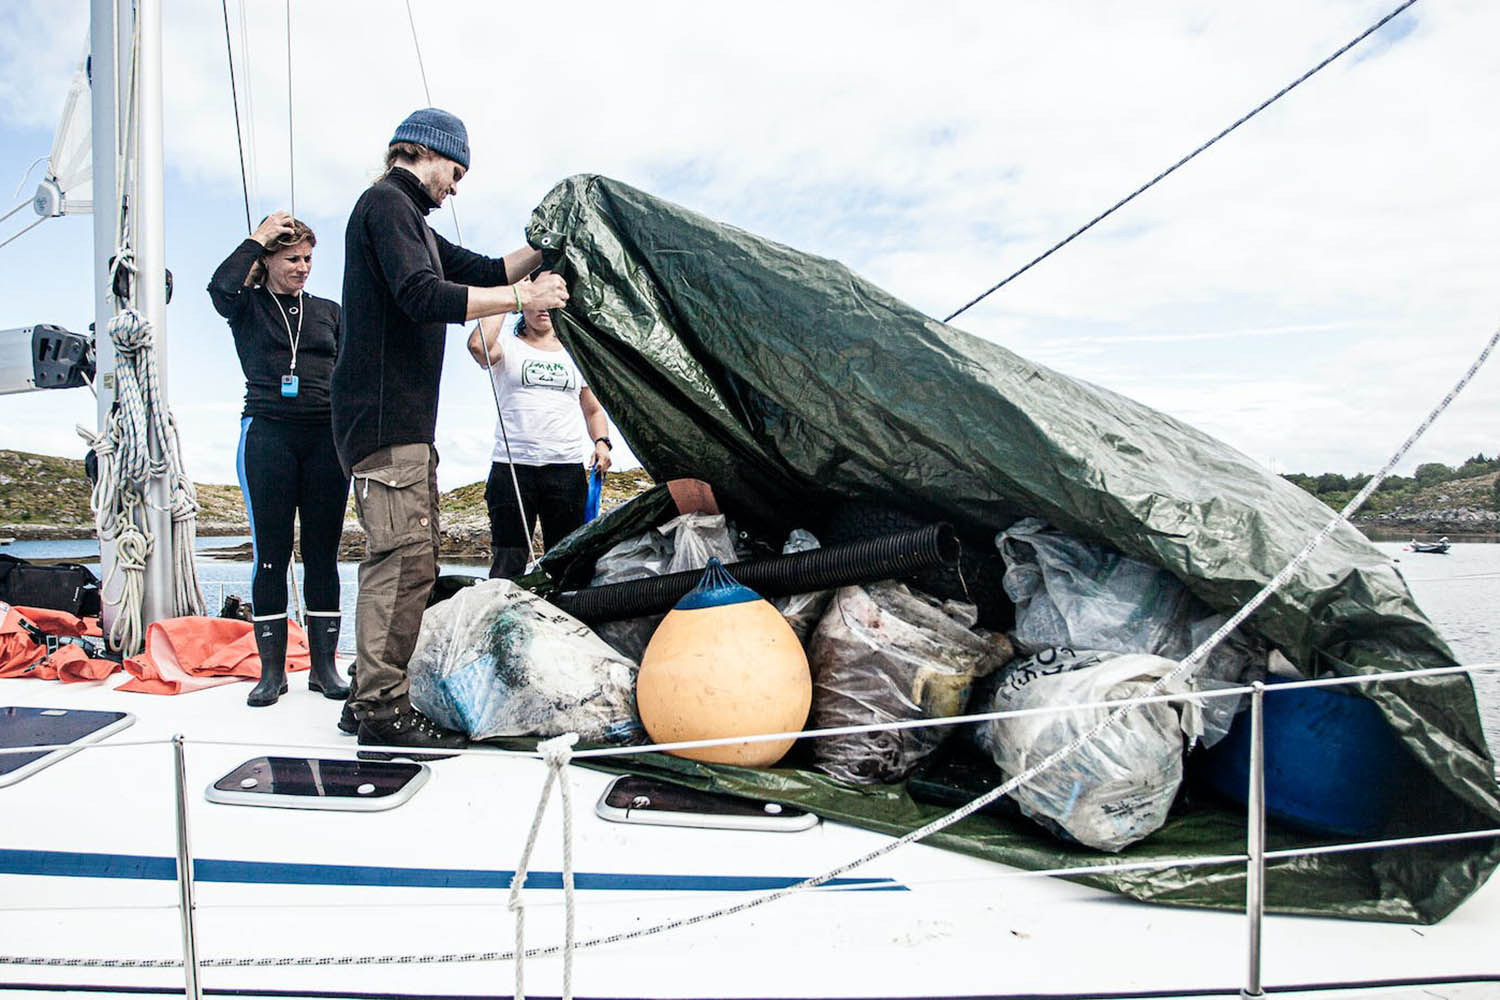 Voyage Navigation - Voile et nettoyage des plages sur les côtes de Helgeland - les équipiers se préparant à la navigation après avoir nettoyer une plage